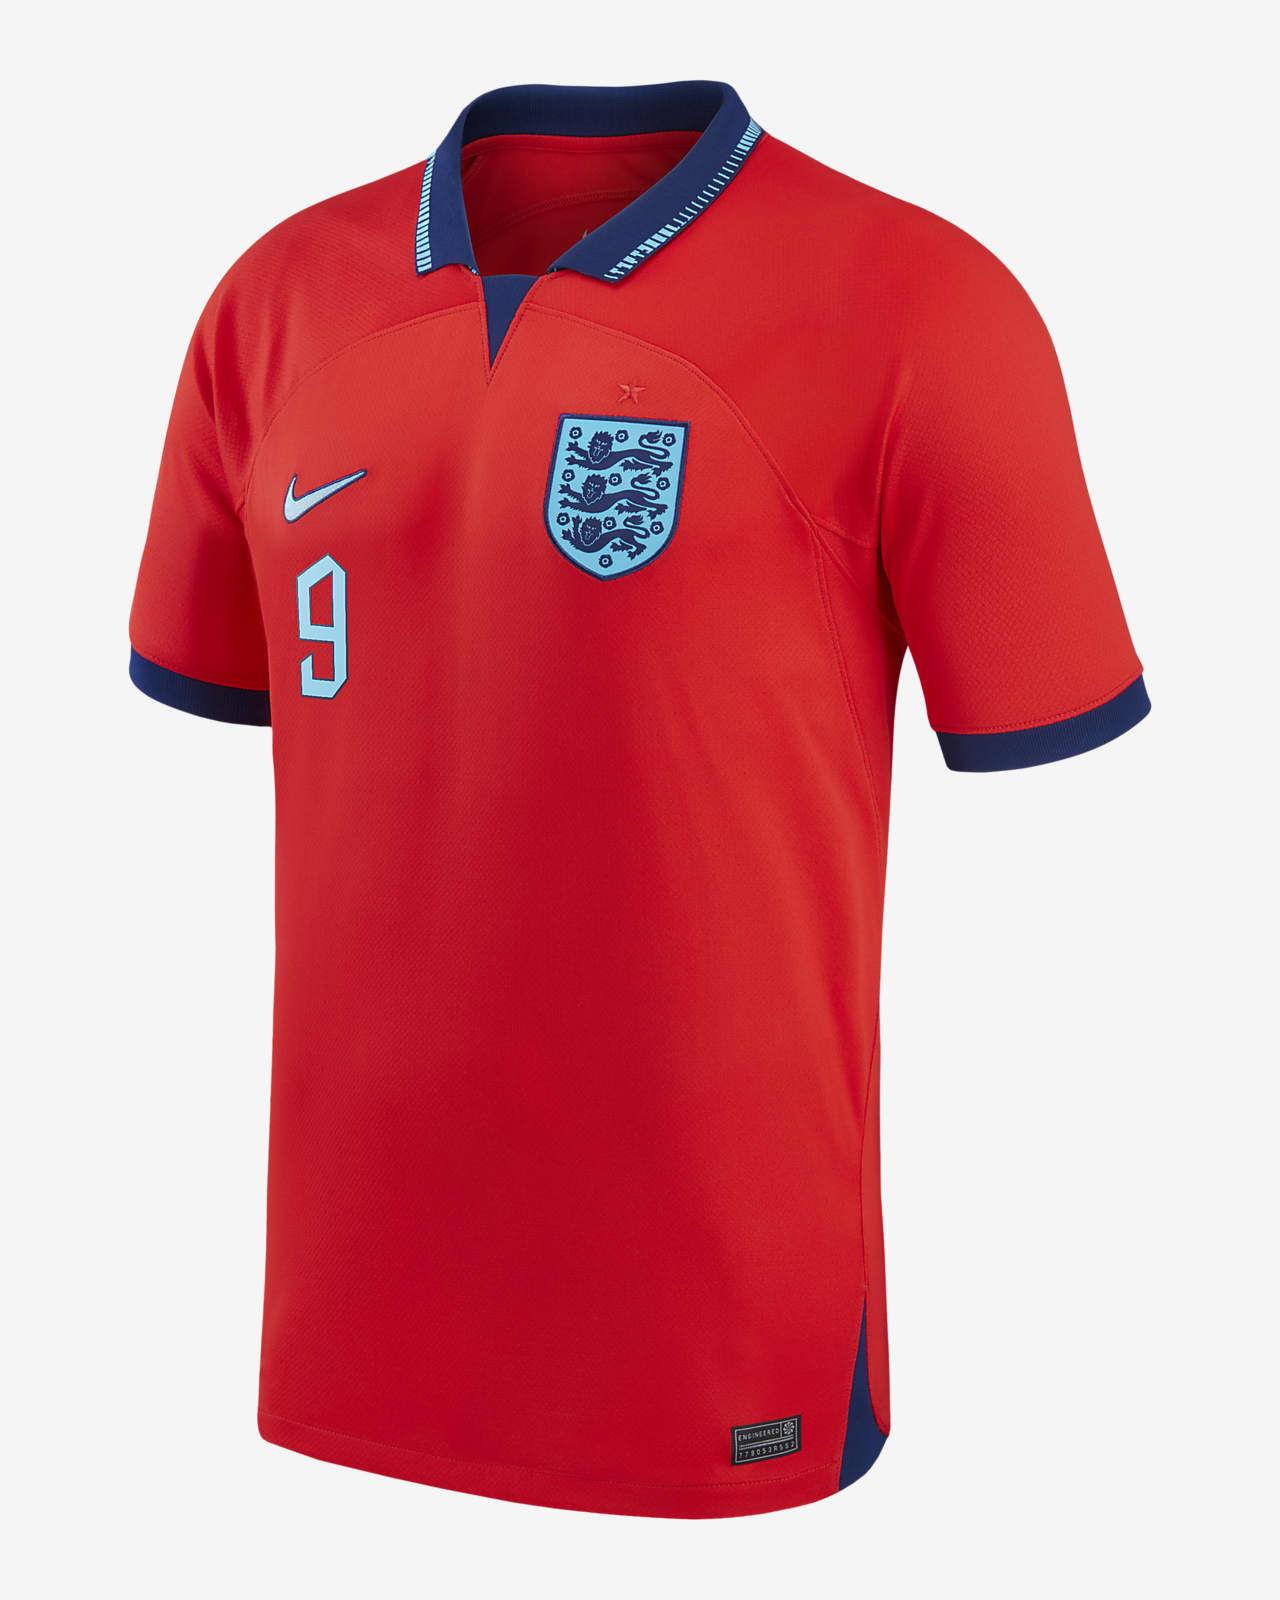 Harry Kane England Kits, Harry Kane England Football Shirts